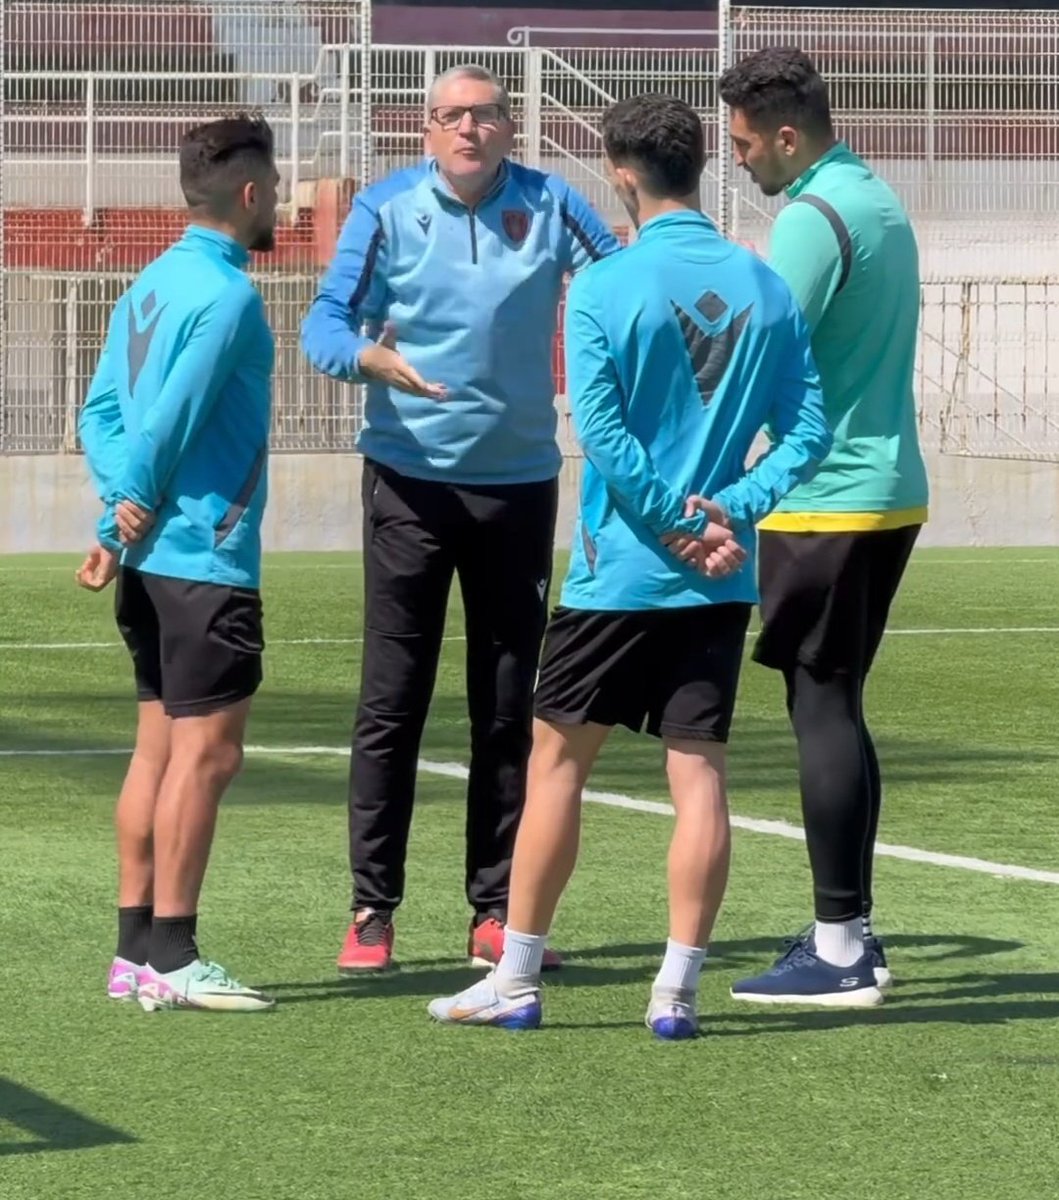 Officiel.. l'entraineur espagnol Juan Carlos Garrido a démissionné aujourd'hui de son poste d'entraîneur de l'@USMAofficiel. Garrido était très en colère contre les Kouloughlis de l'USMA et la fédération algérienne pour ne pas avoir joué la demi-finale contre Berkane 👏 #Algerie